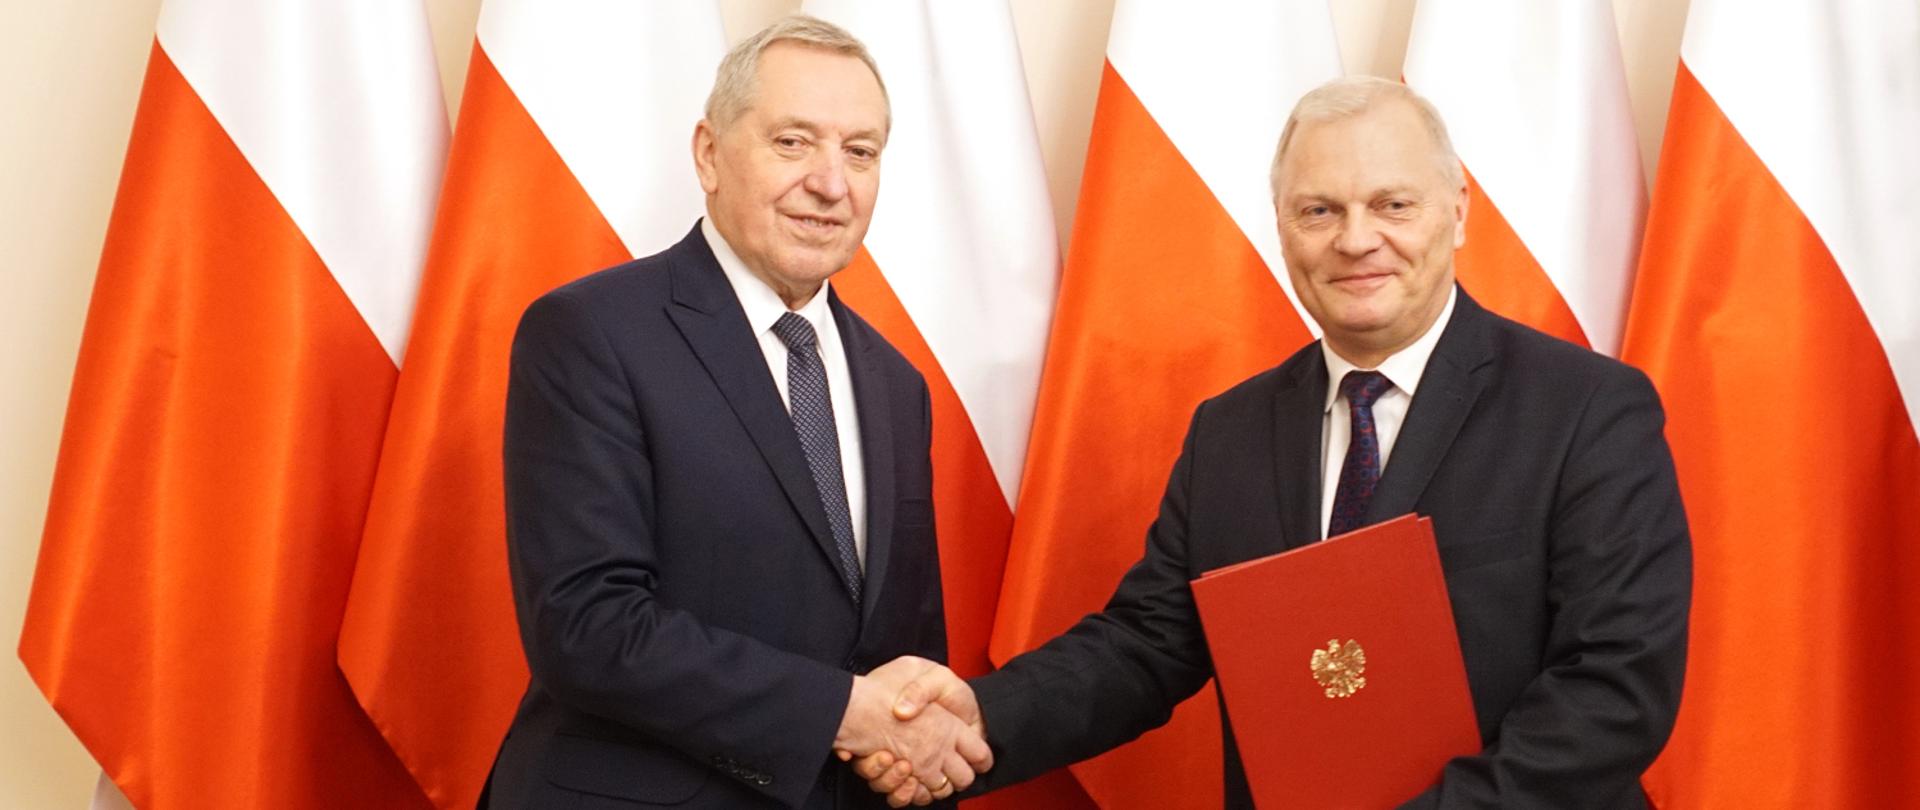 Wicepremier Henryk Kowalczyk i sekretarz stanu Lech Kołakowski podają sobie rękę na tle polskich flag.